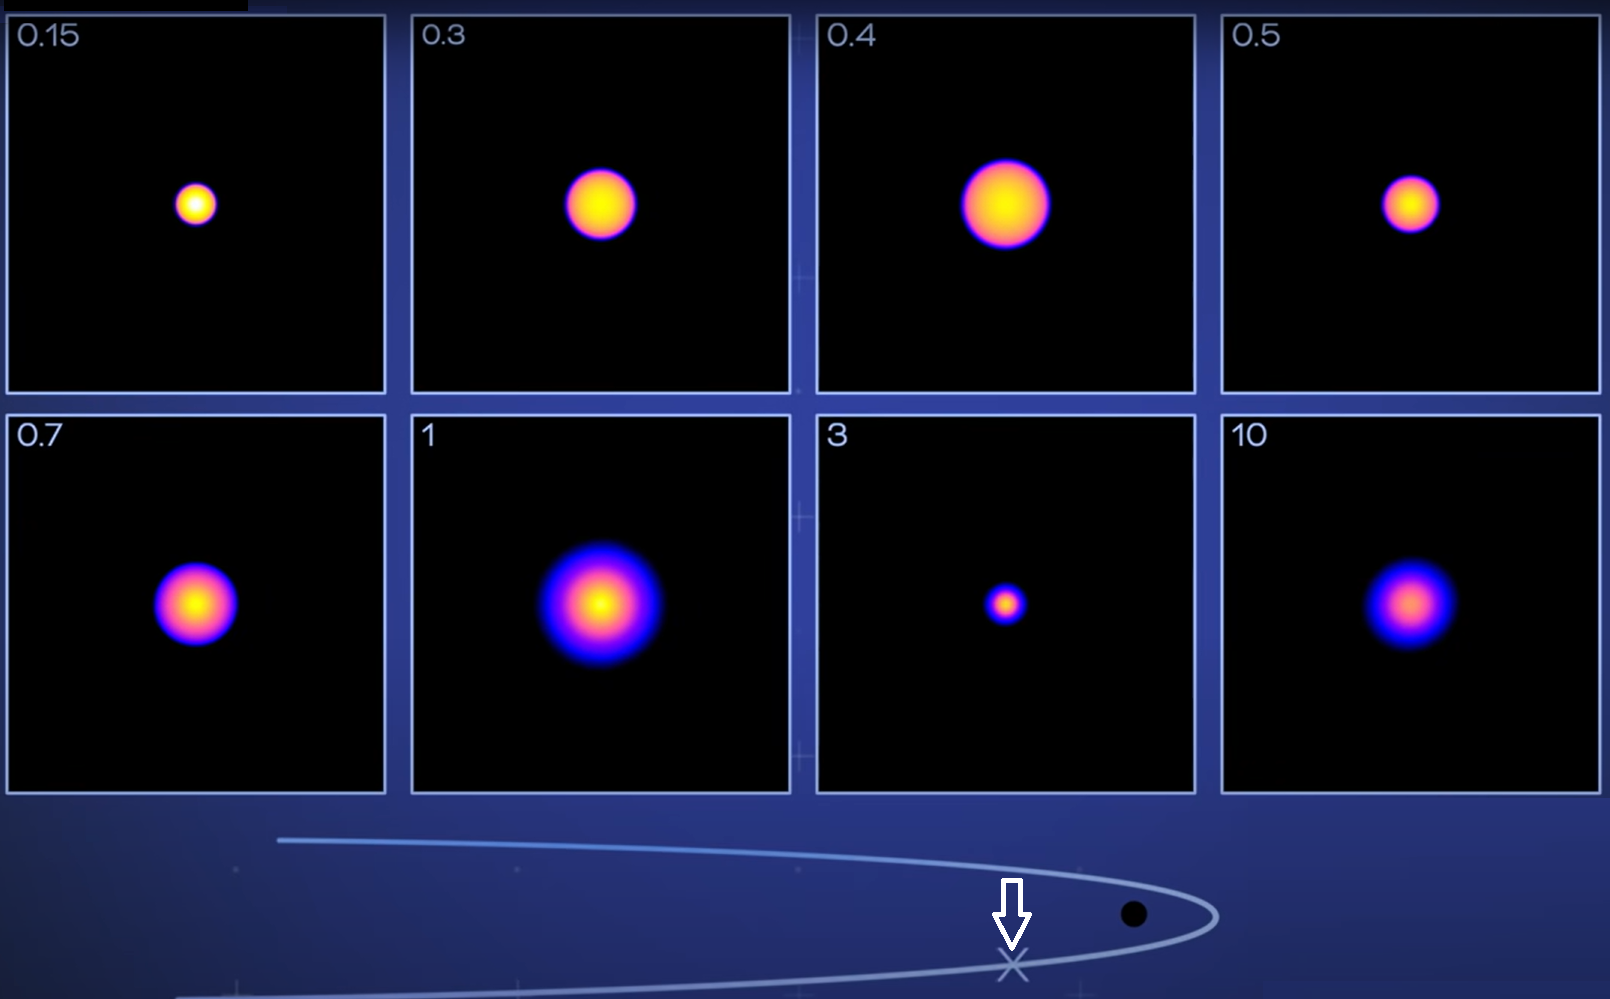 Drugi z trzech momentów w symulacji rozerwania pływowego ośmiu gwiazd ciągu głównego (masy gwiazd podane w górnym lewym rogu każdego kwadratu) przez supermasywną czarną dziurę o masie 1 miliona Mʘ. Przetrwały gwiazdy o masach 0.15 Mʘ, 0.3 Mʘ, 0.7 Mʘ i 1 Mʘ. Zniszczeniu uległy gwiazdy o masach 0.4 Mʘ, 0.5 Mʘ, 3 Mʘ i 10 Mʘ. W tej symulacji kolor żółty reprezentuje największe gęstości, a niebieski – najmniejsze. Oprac. na podstawie: NASA's Goddard Space Flight Center/Taeho Ryu